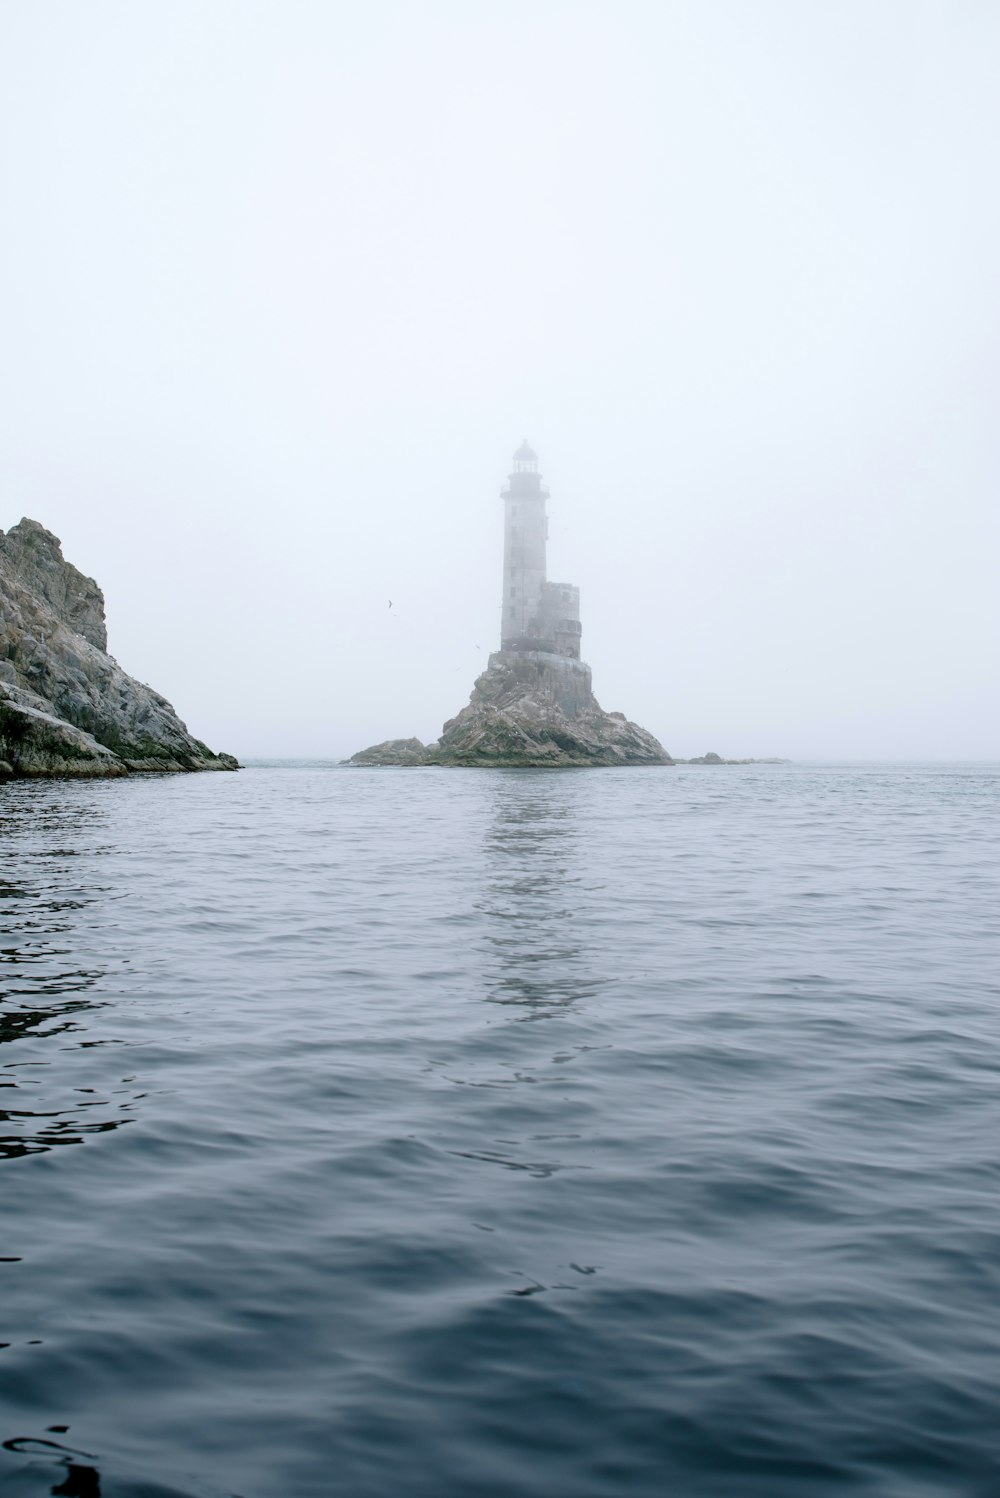 a lighthouse on an island